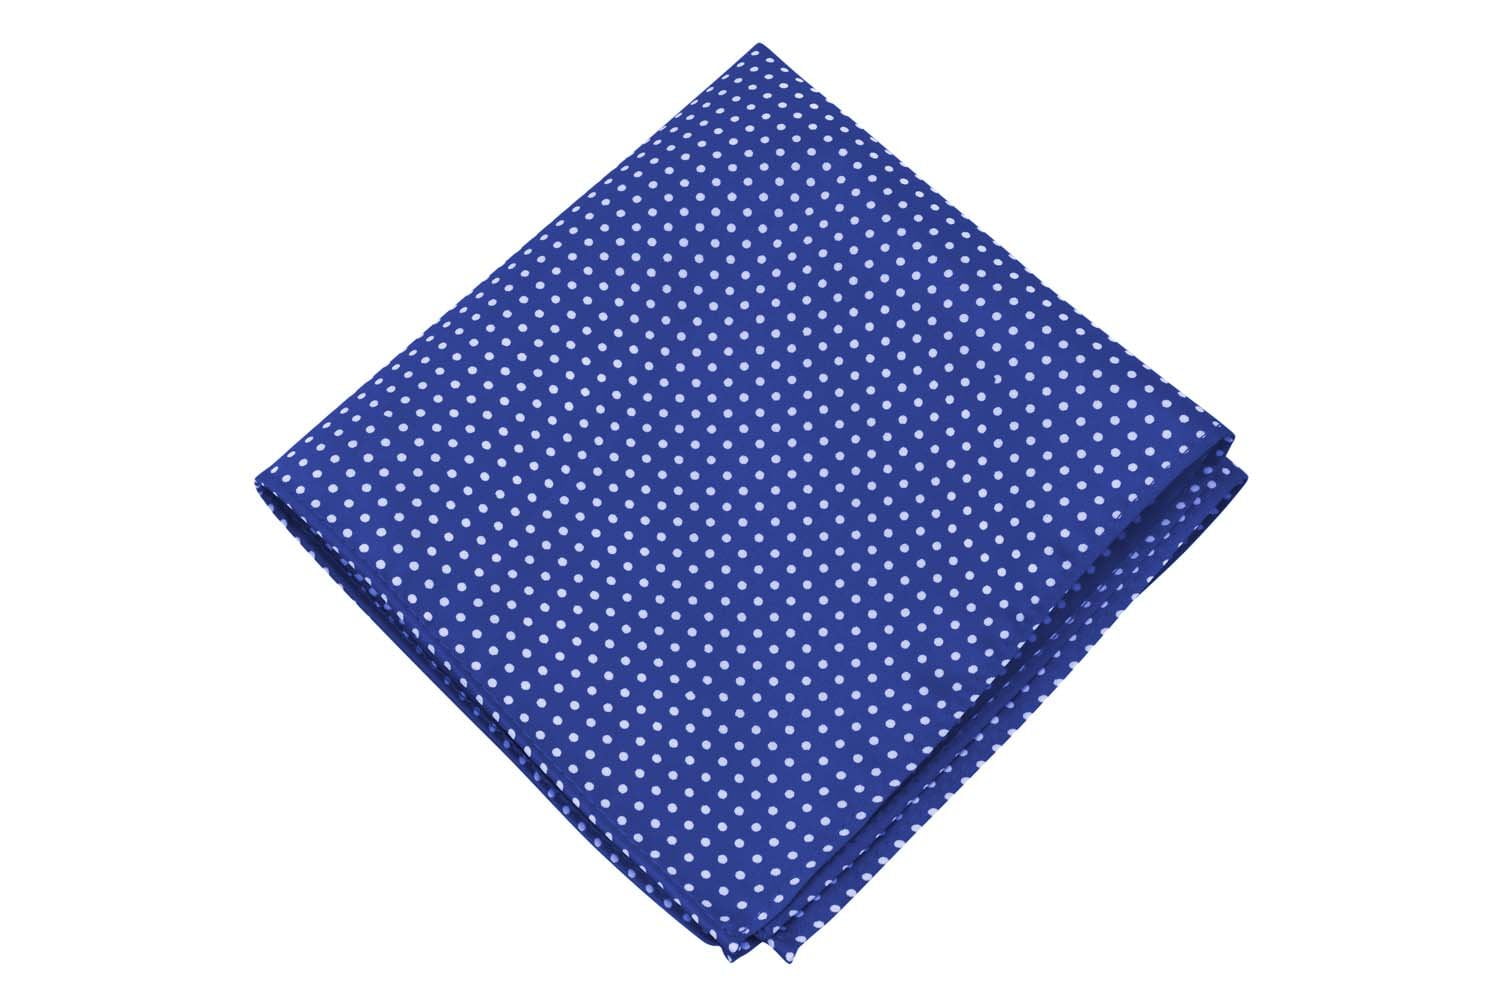 Hankie COTTON Pocket Square Handkerchief MENS Hanky PALE MINT BLUE AQUA 